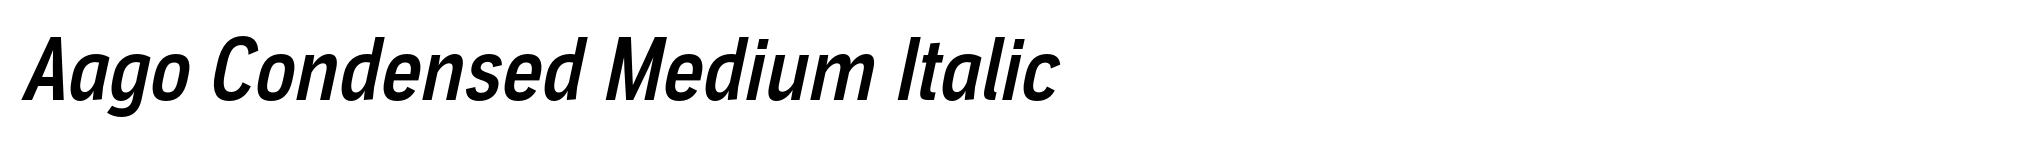 Aago Condensed Medium Italic image